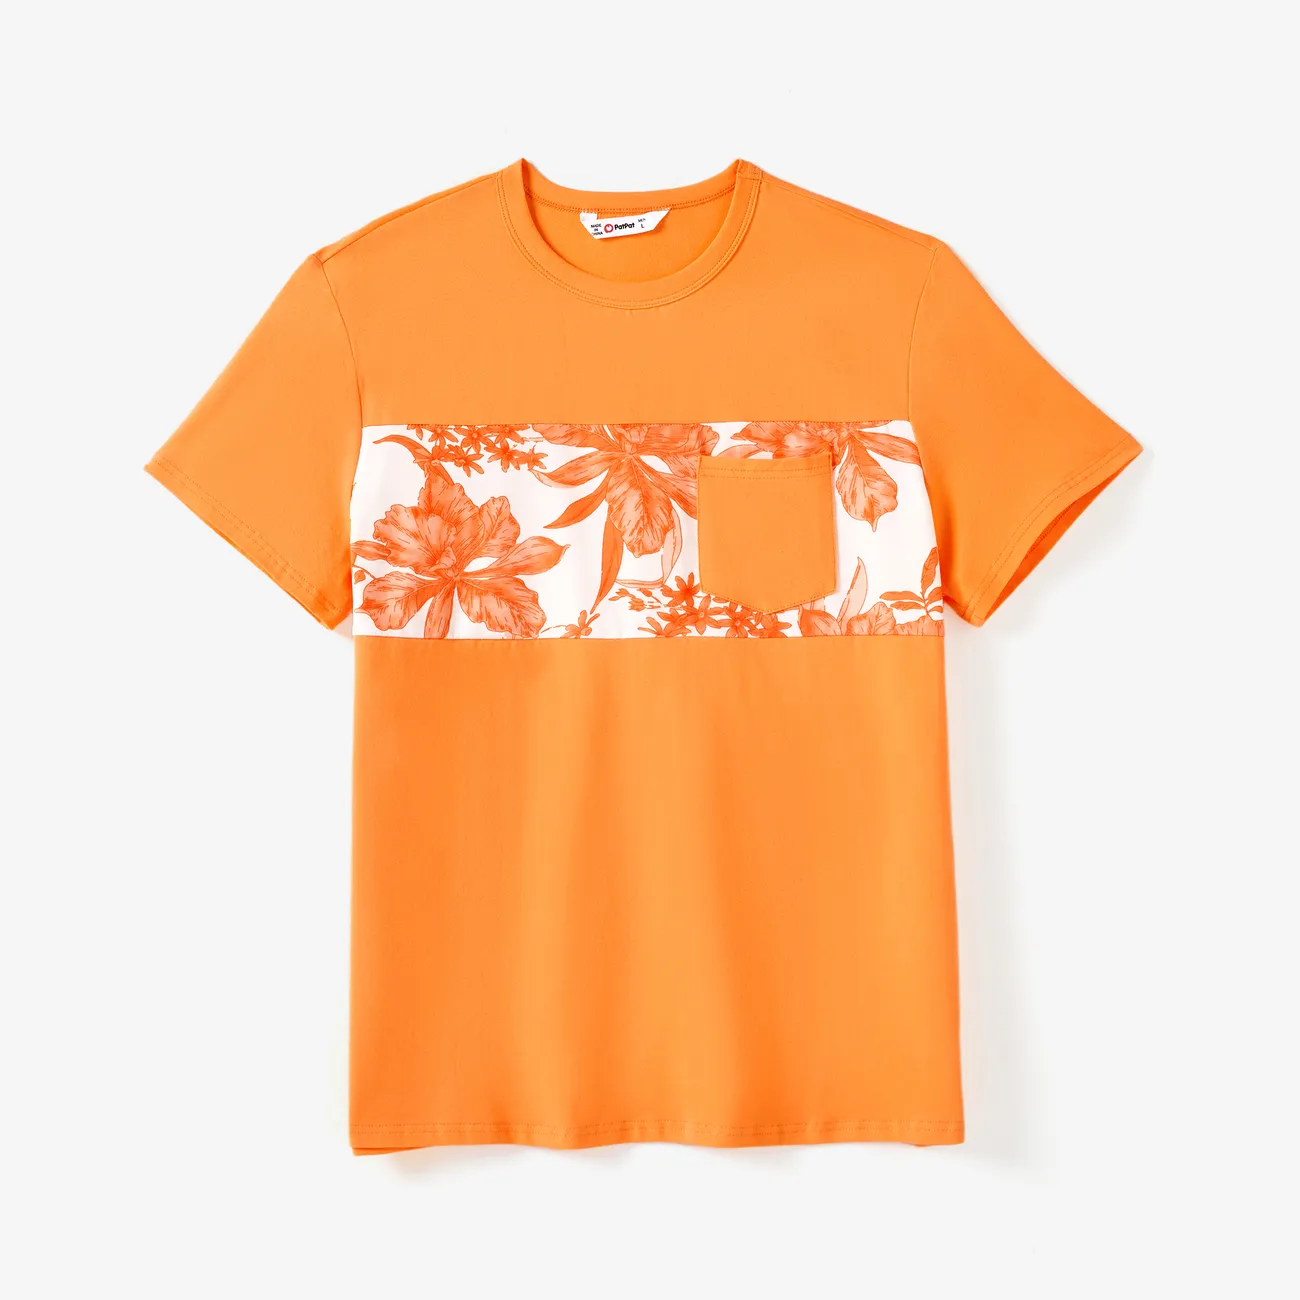 Familien-Looks Tropische Pflanzen und Blumen Tanktop Familien-Outfits Sets orange big image 1